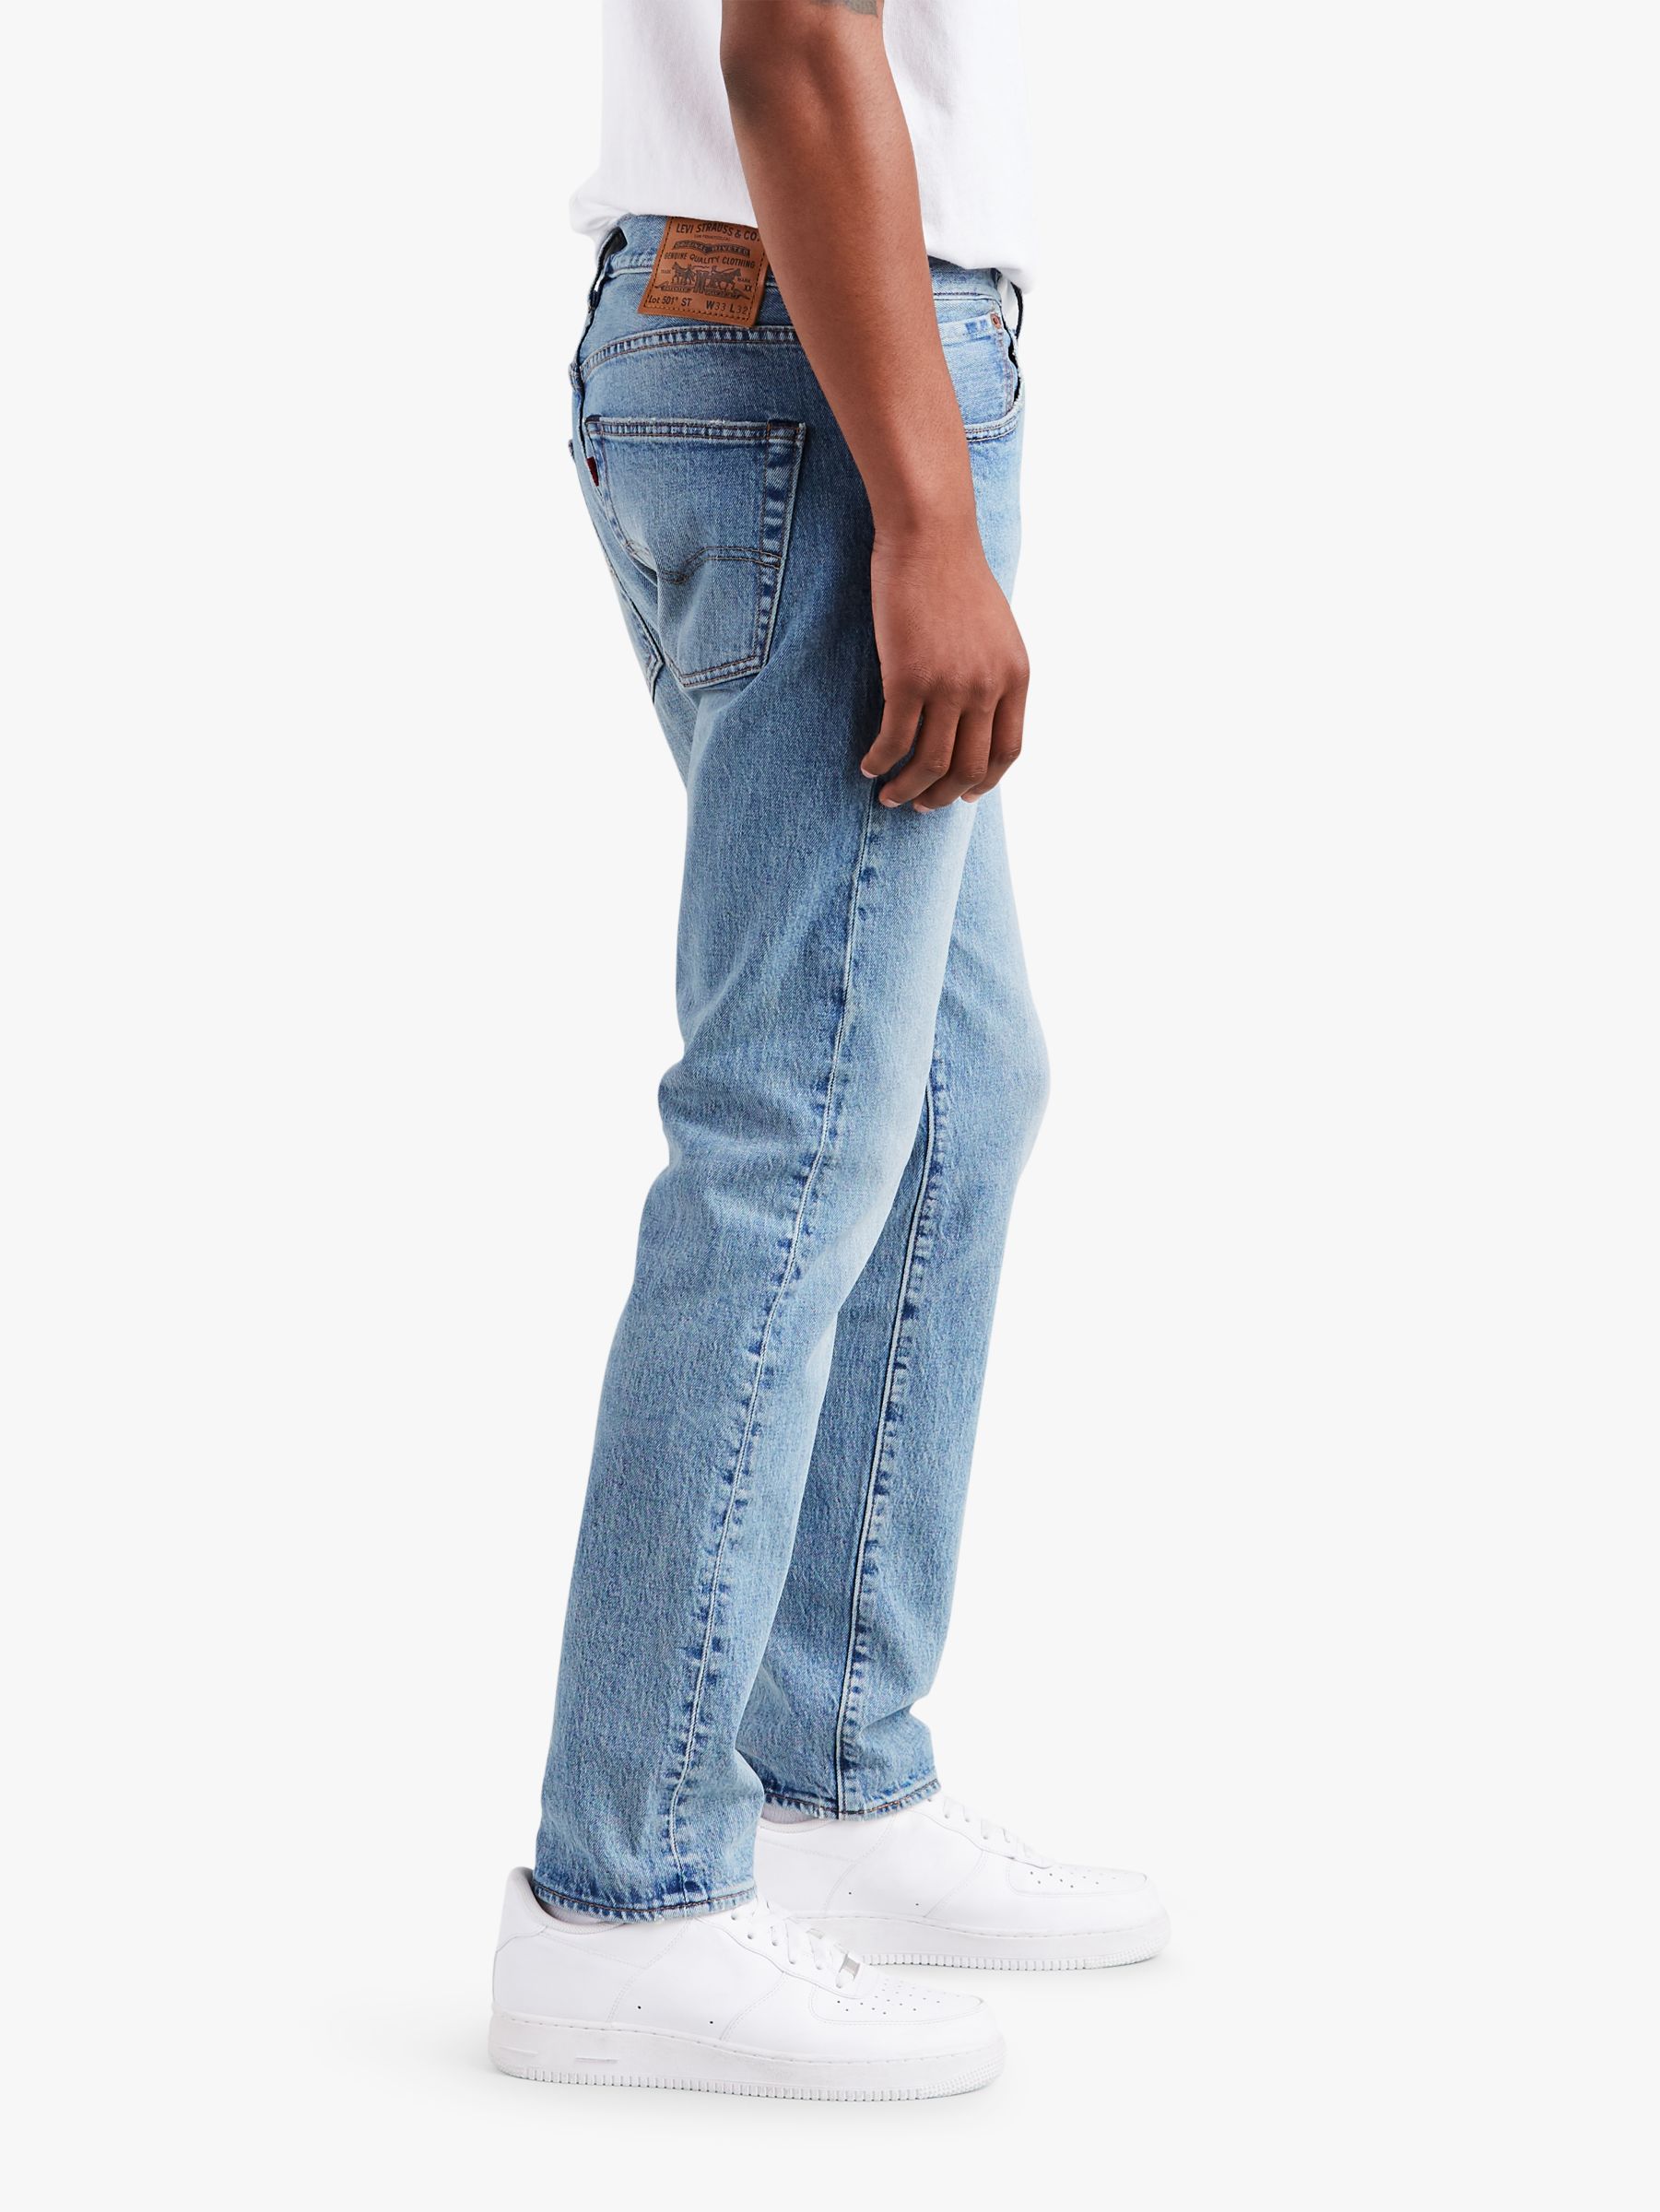 justin timberlake 501 jeans